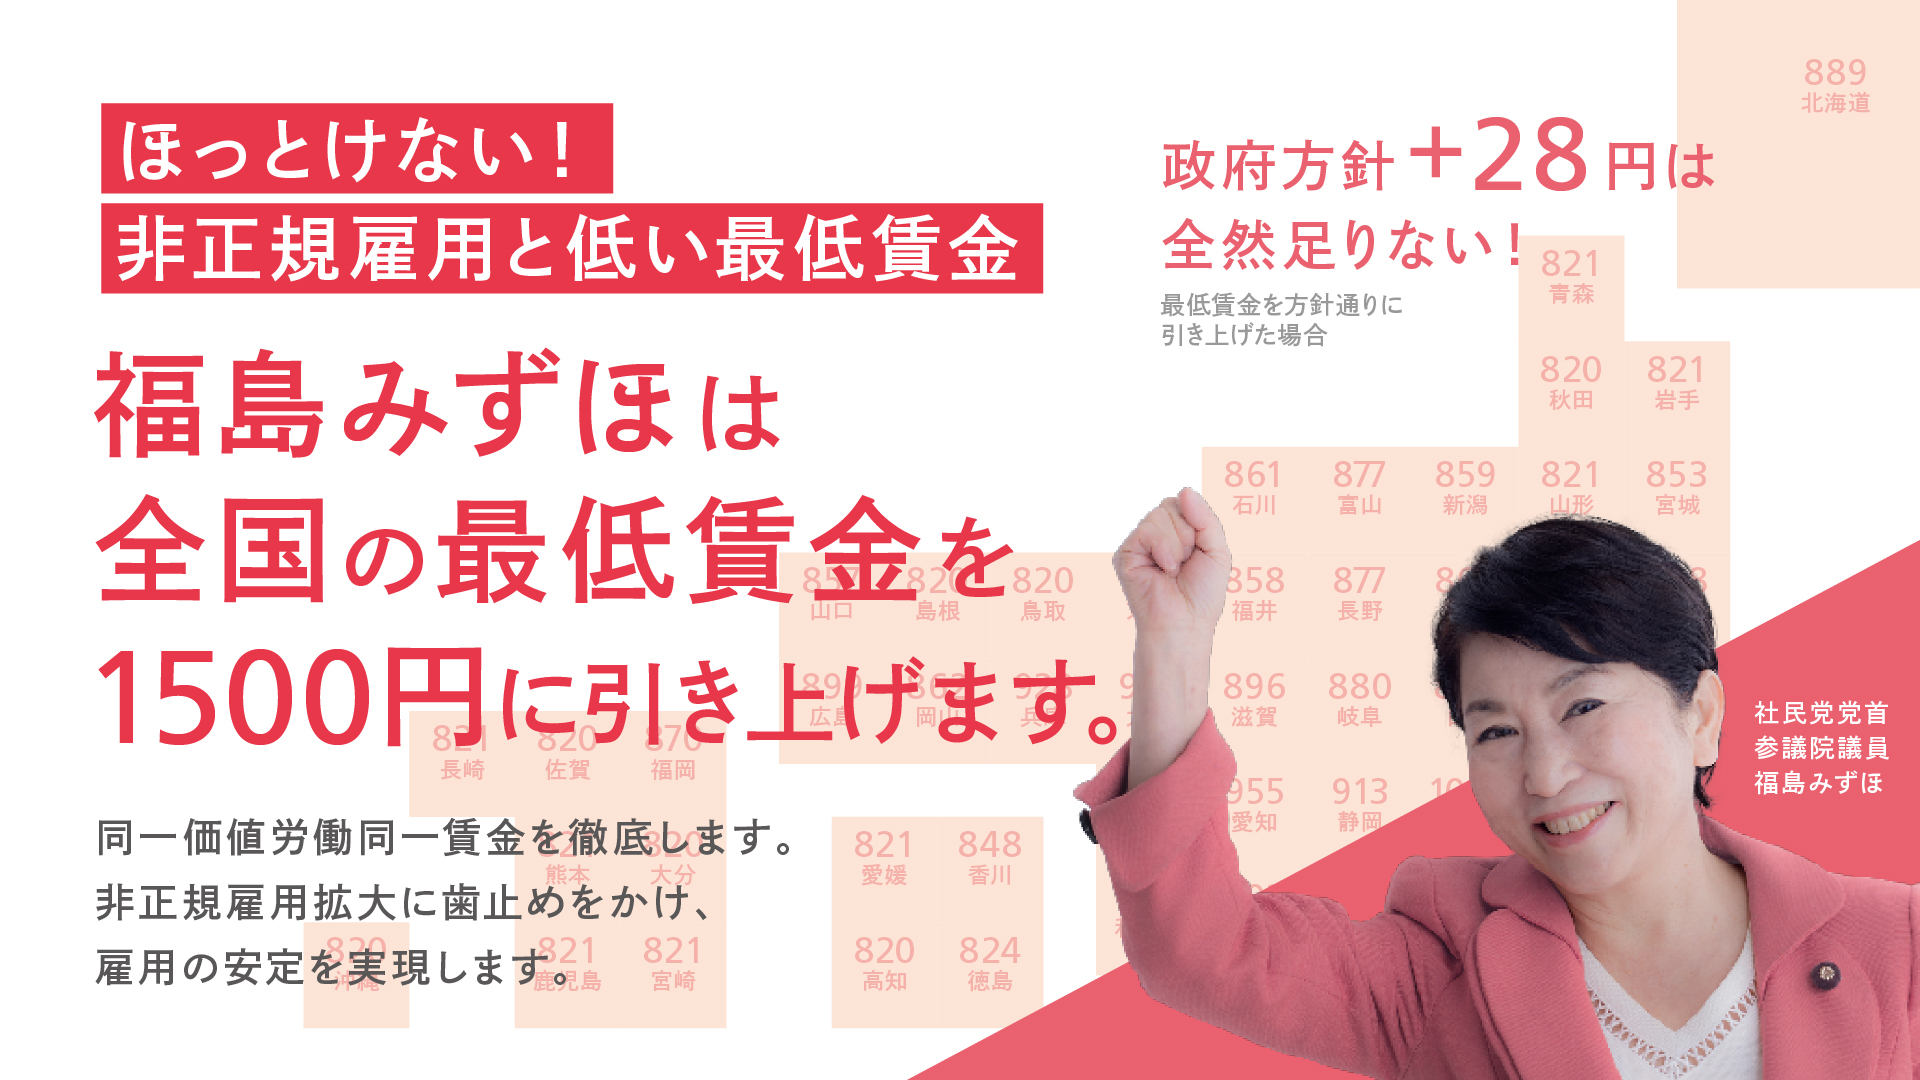 福島みずほは全国の最低賃金を1500円に引き上げます。